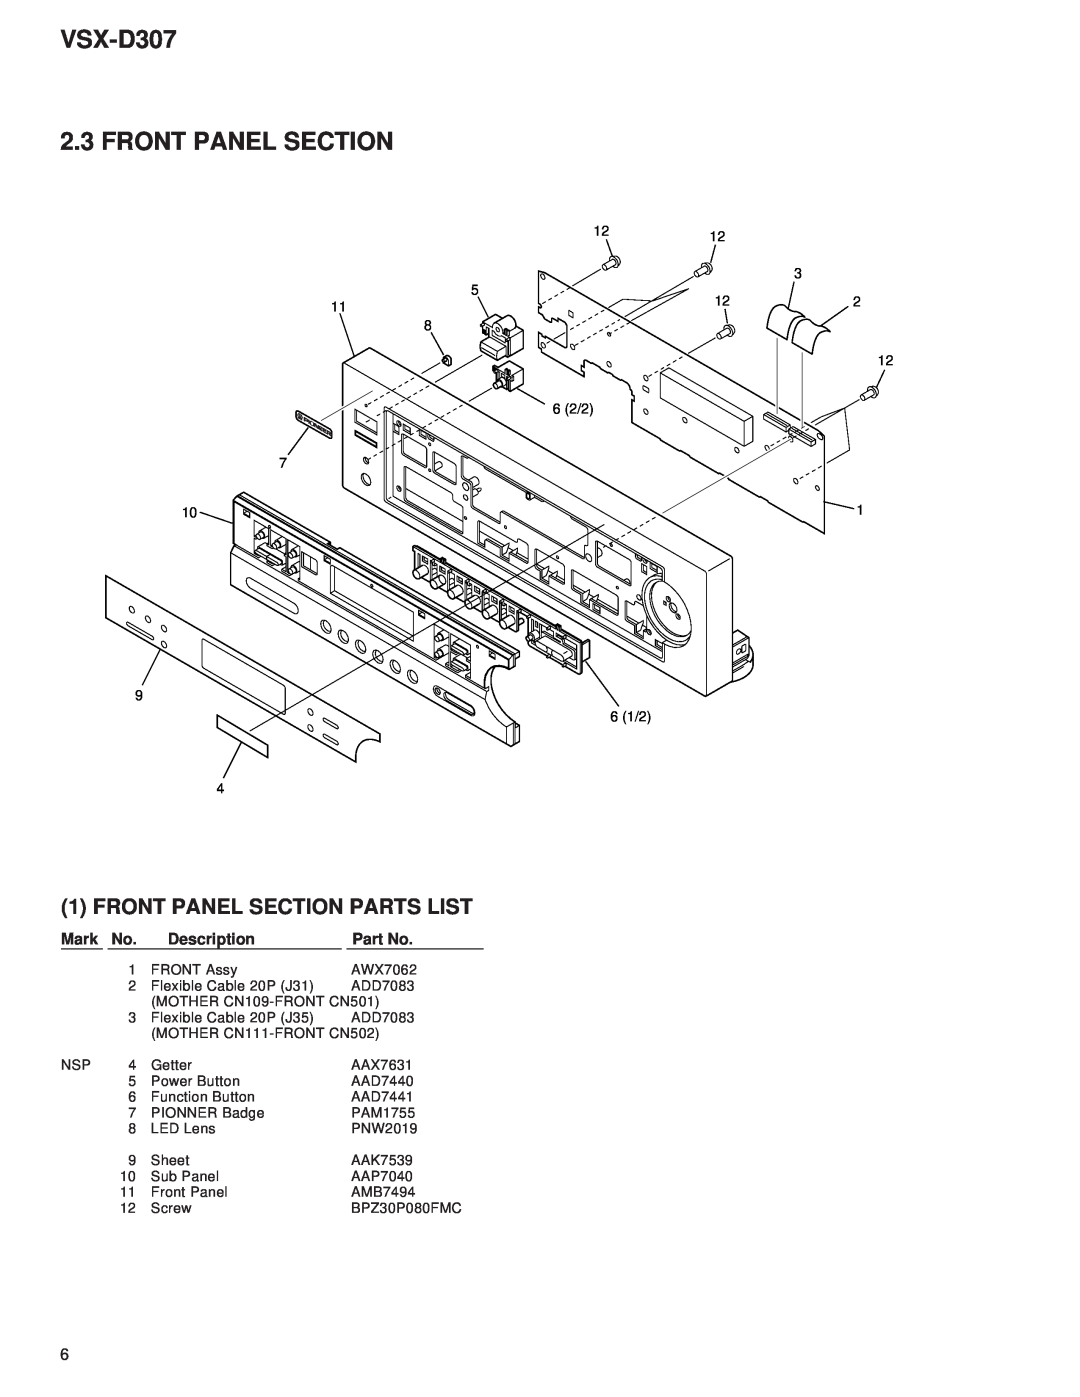 Dolby Laboratories STAV-3770, 31-3043 VSX-D307 2.3 FRONT PANEL SECTION, Front Panel Section Parts List, Mark, Description 